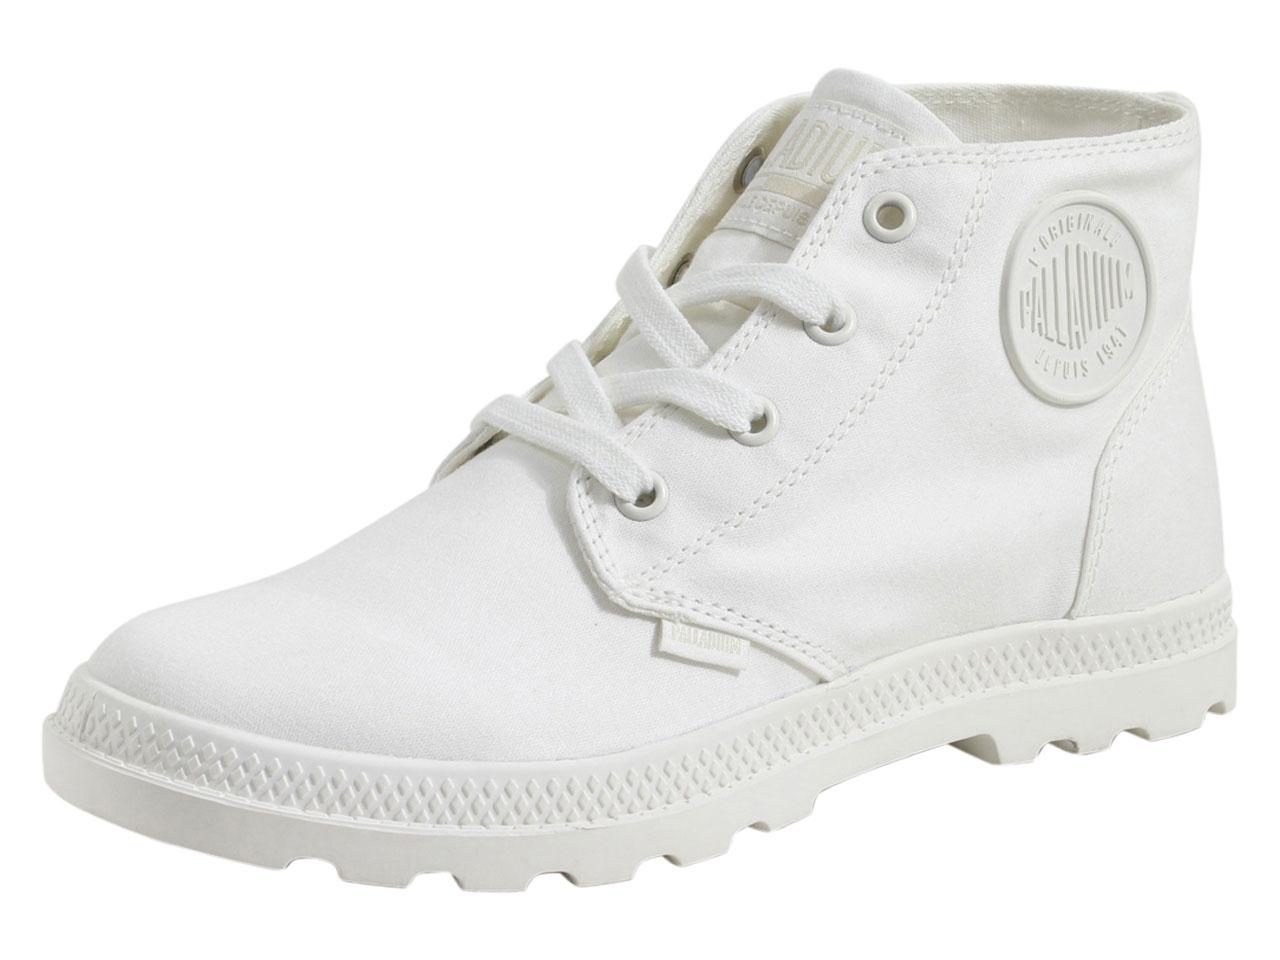 Palladium Women's Pampa Free Canvas Boots Shoes - White - 6 B(M) US